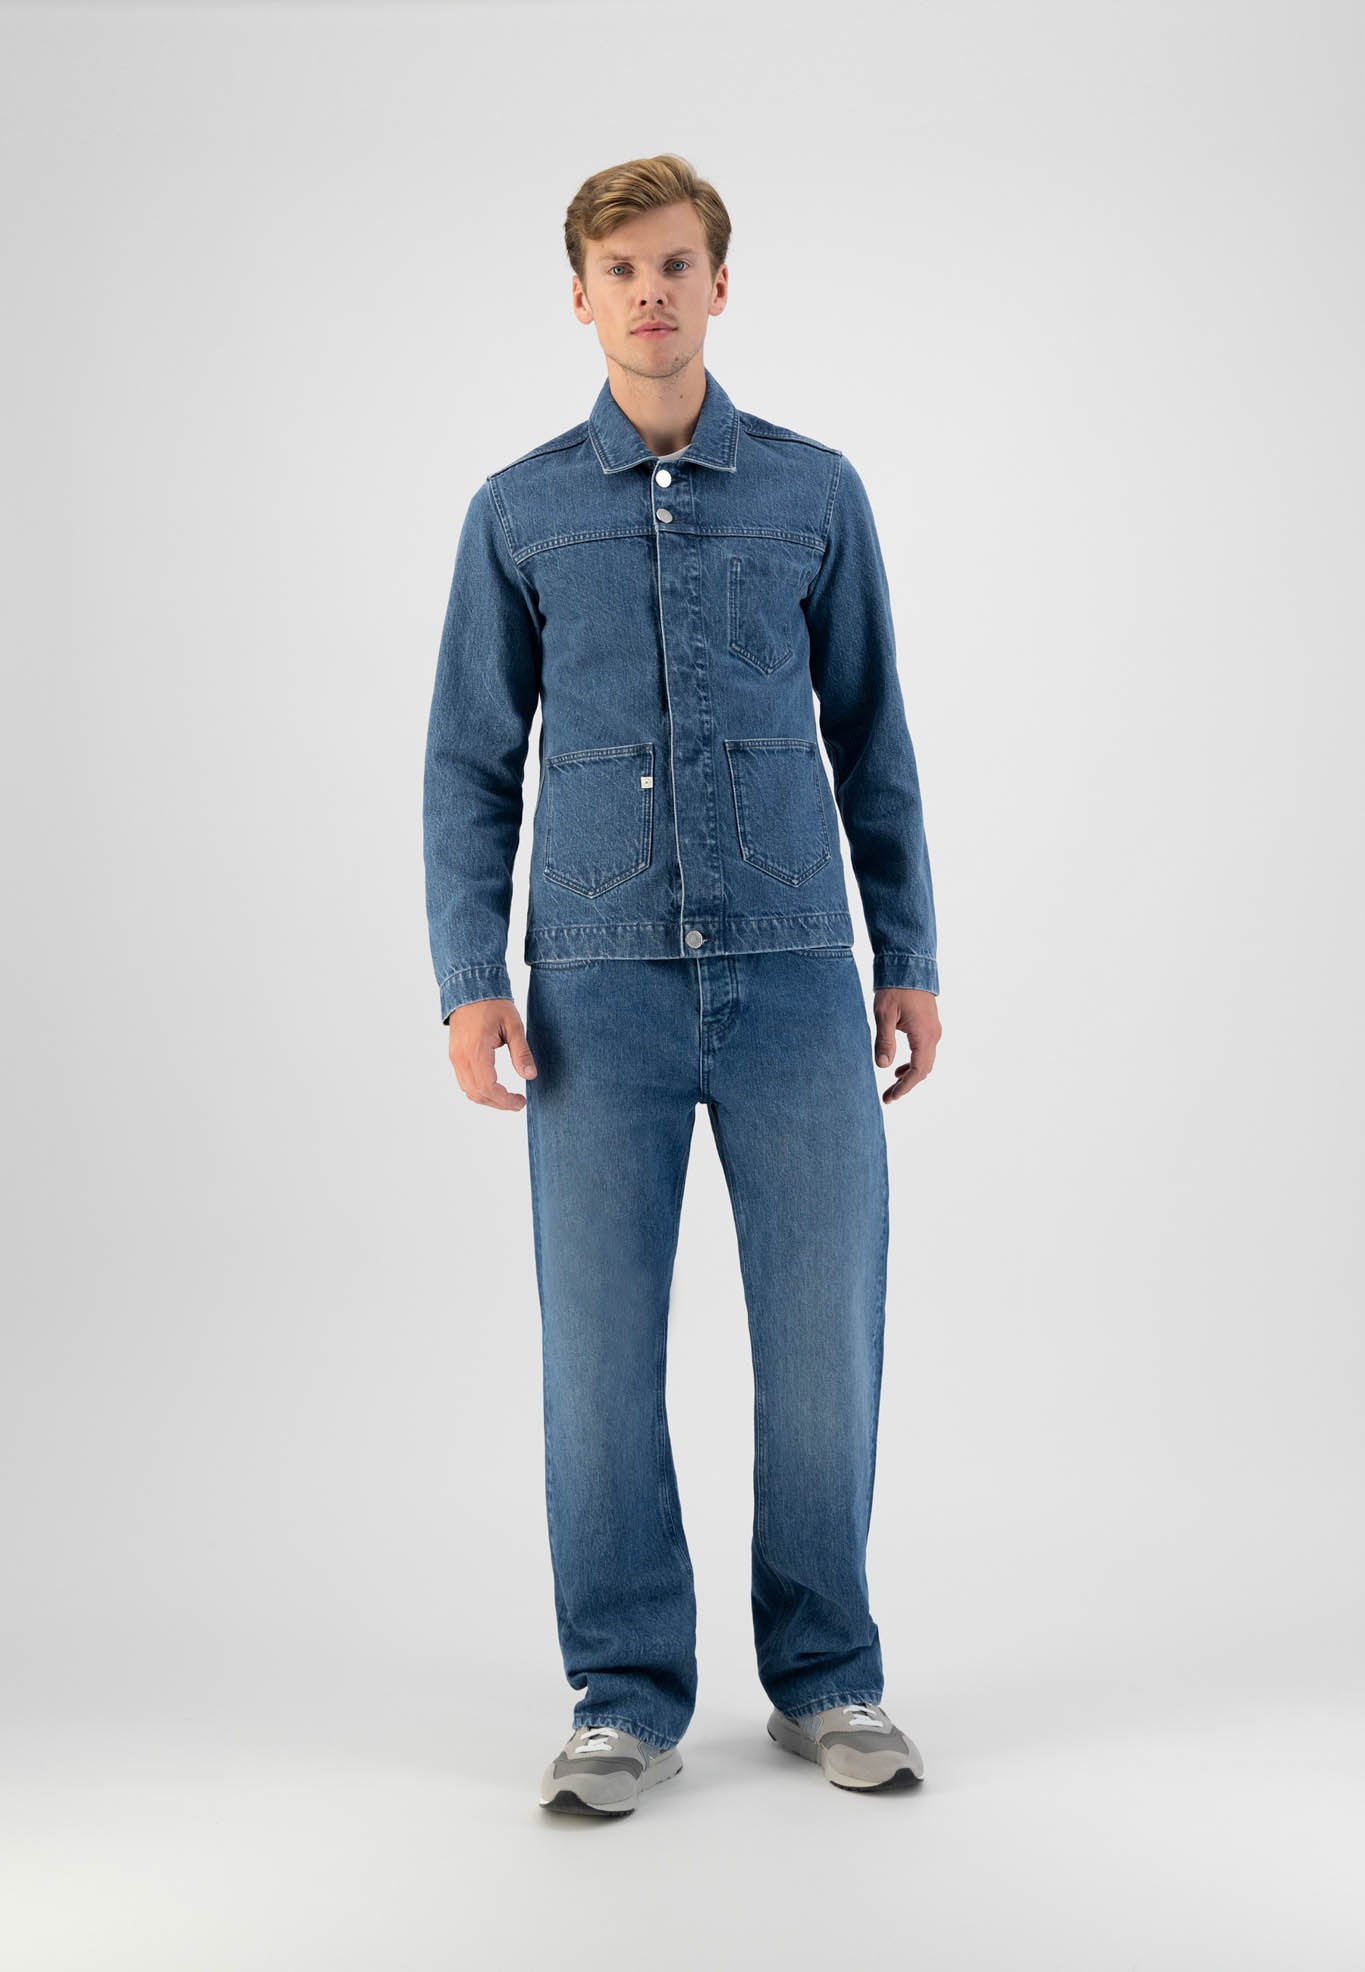 Men - MUD Jeans - Jackson Jacket - Medium Stone